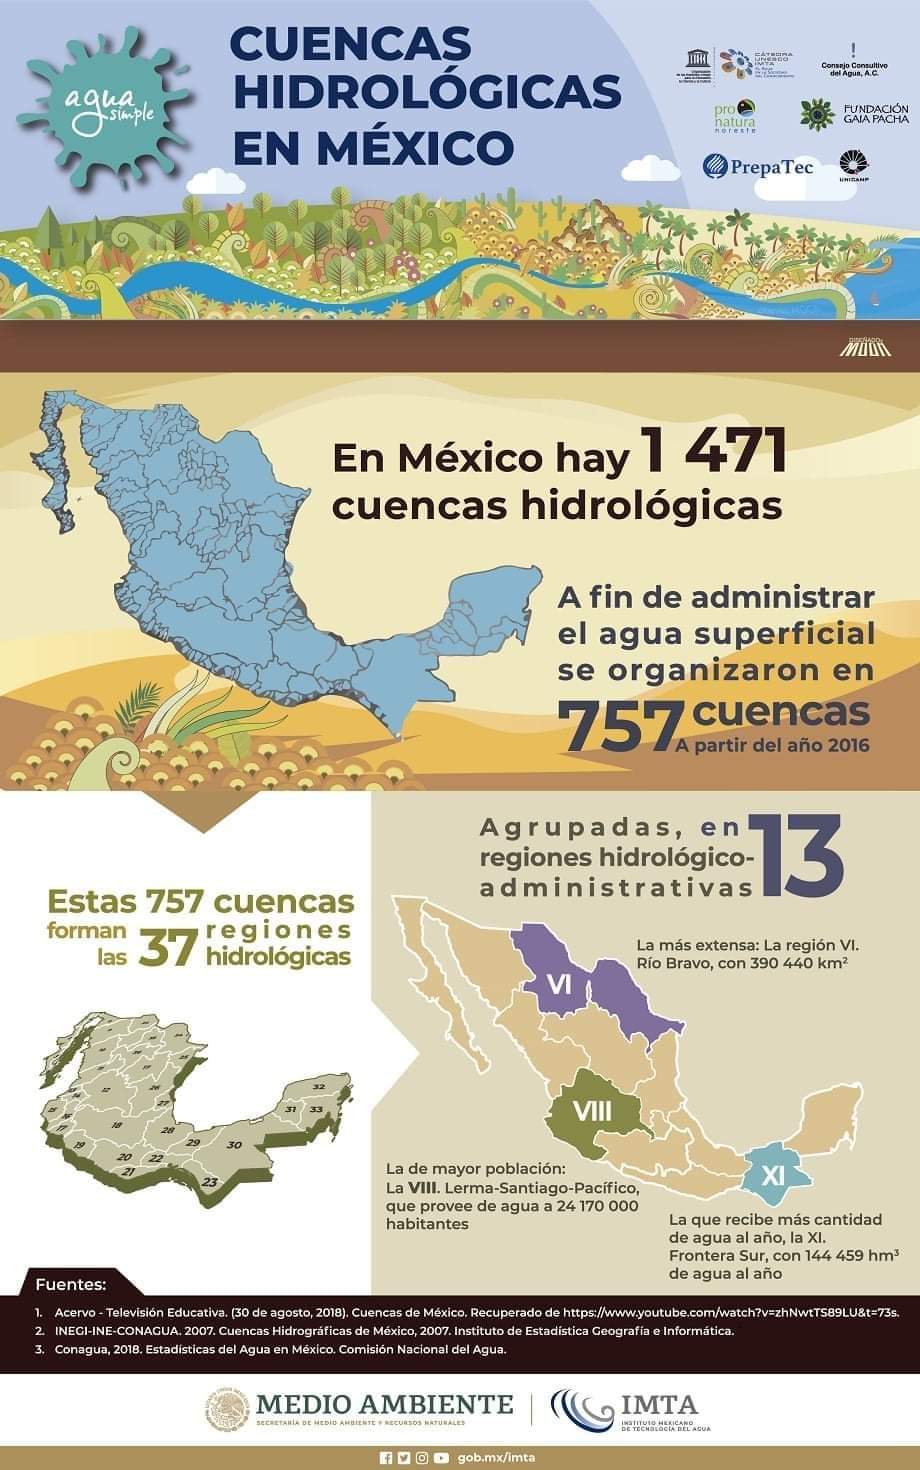 Cuencas Hidrológicas en México (Infografía)